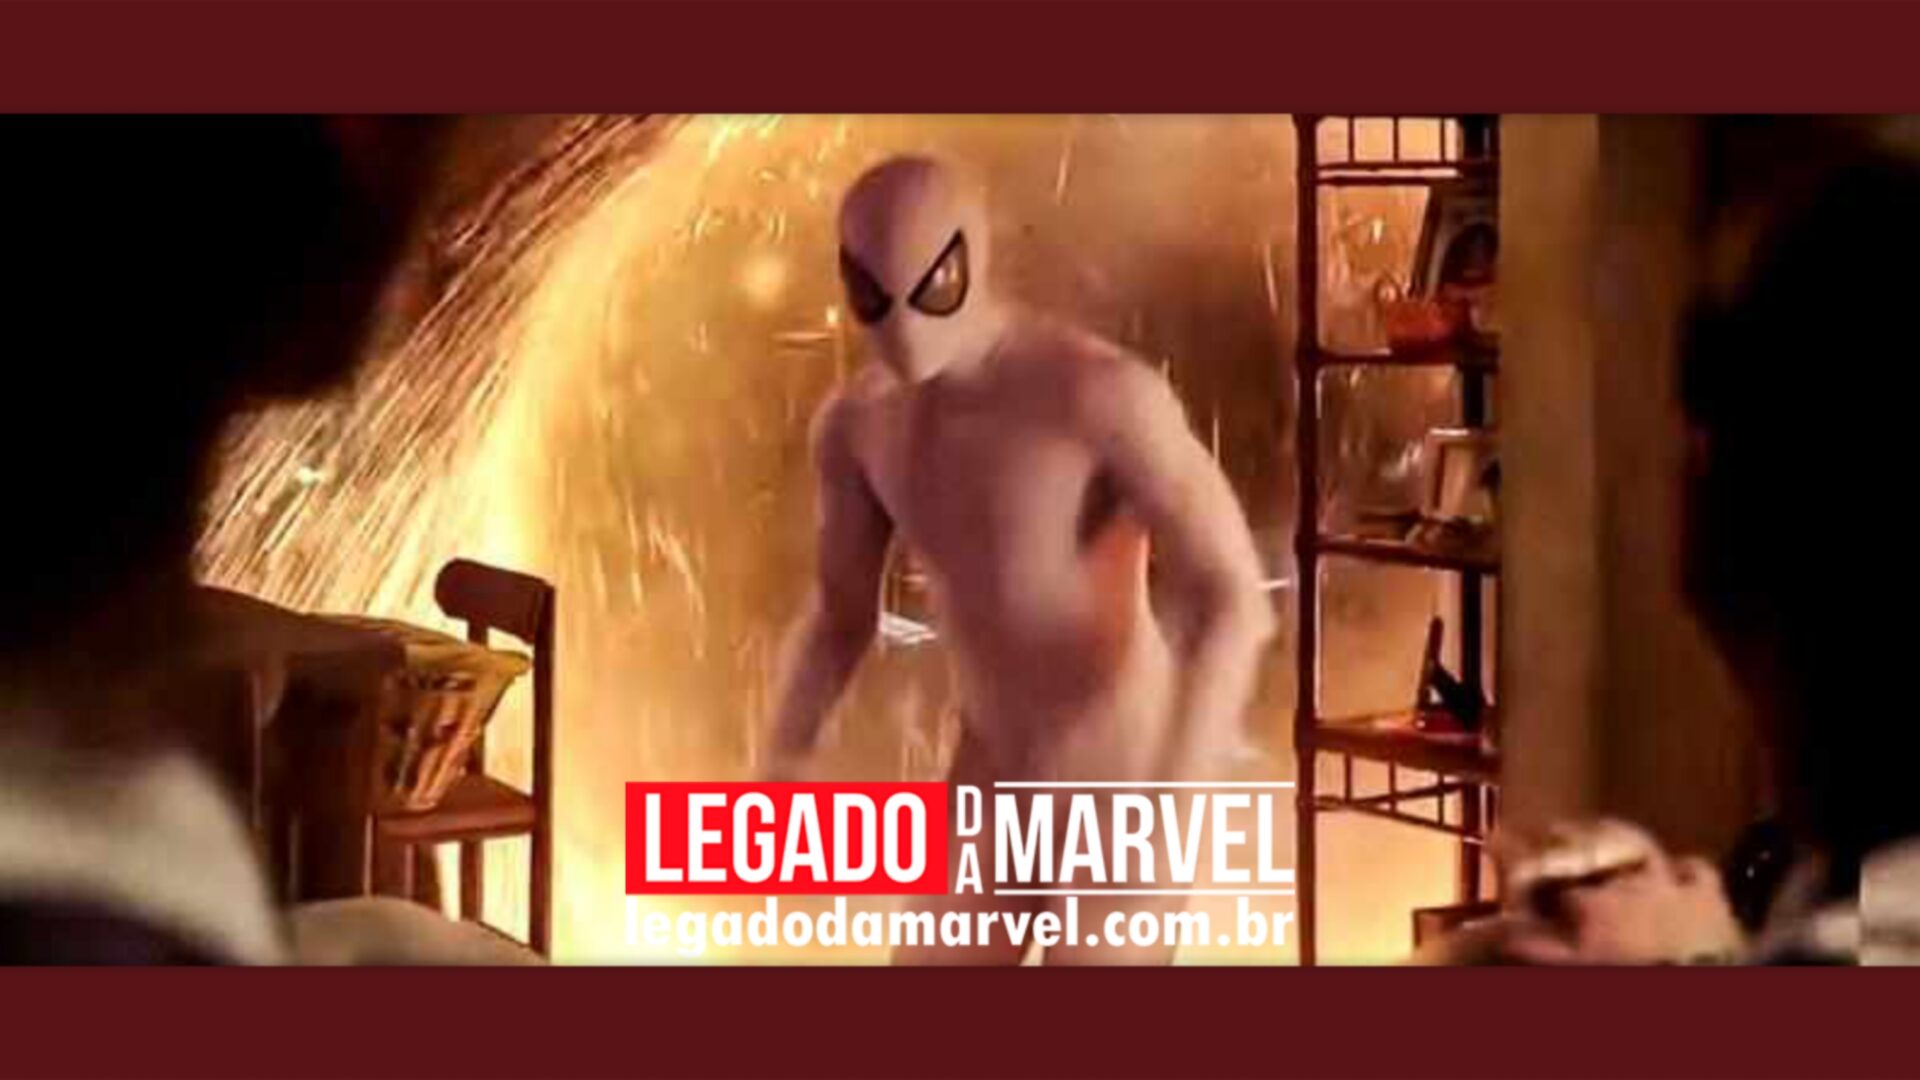 Homem-Aranha 3 dependeu de CGI mais do que imaginávamos, revela vídeo